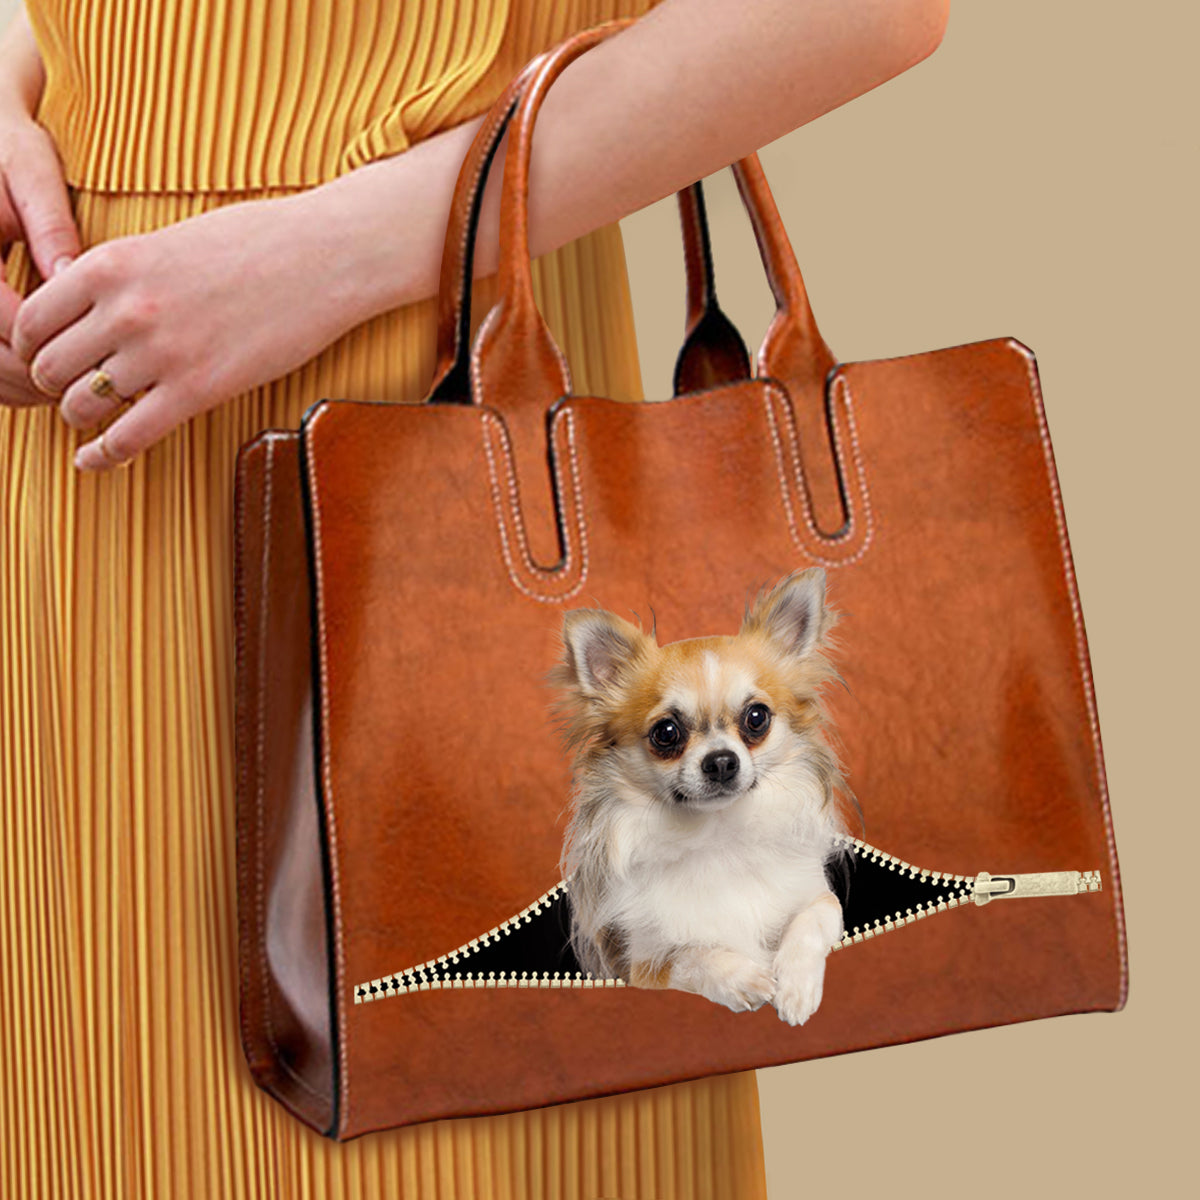 Ihr bester Begleiter – Chihuahua Luxus-Handtasche V1